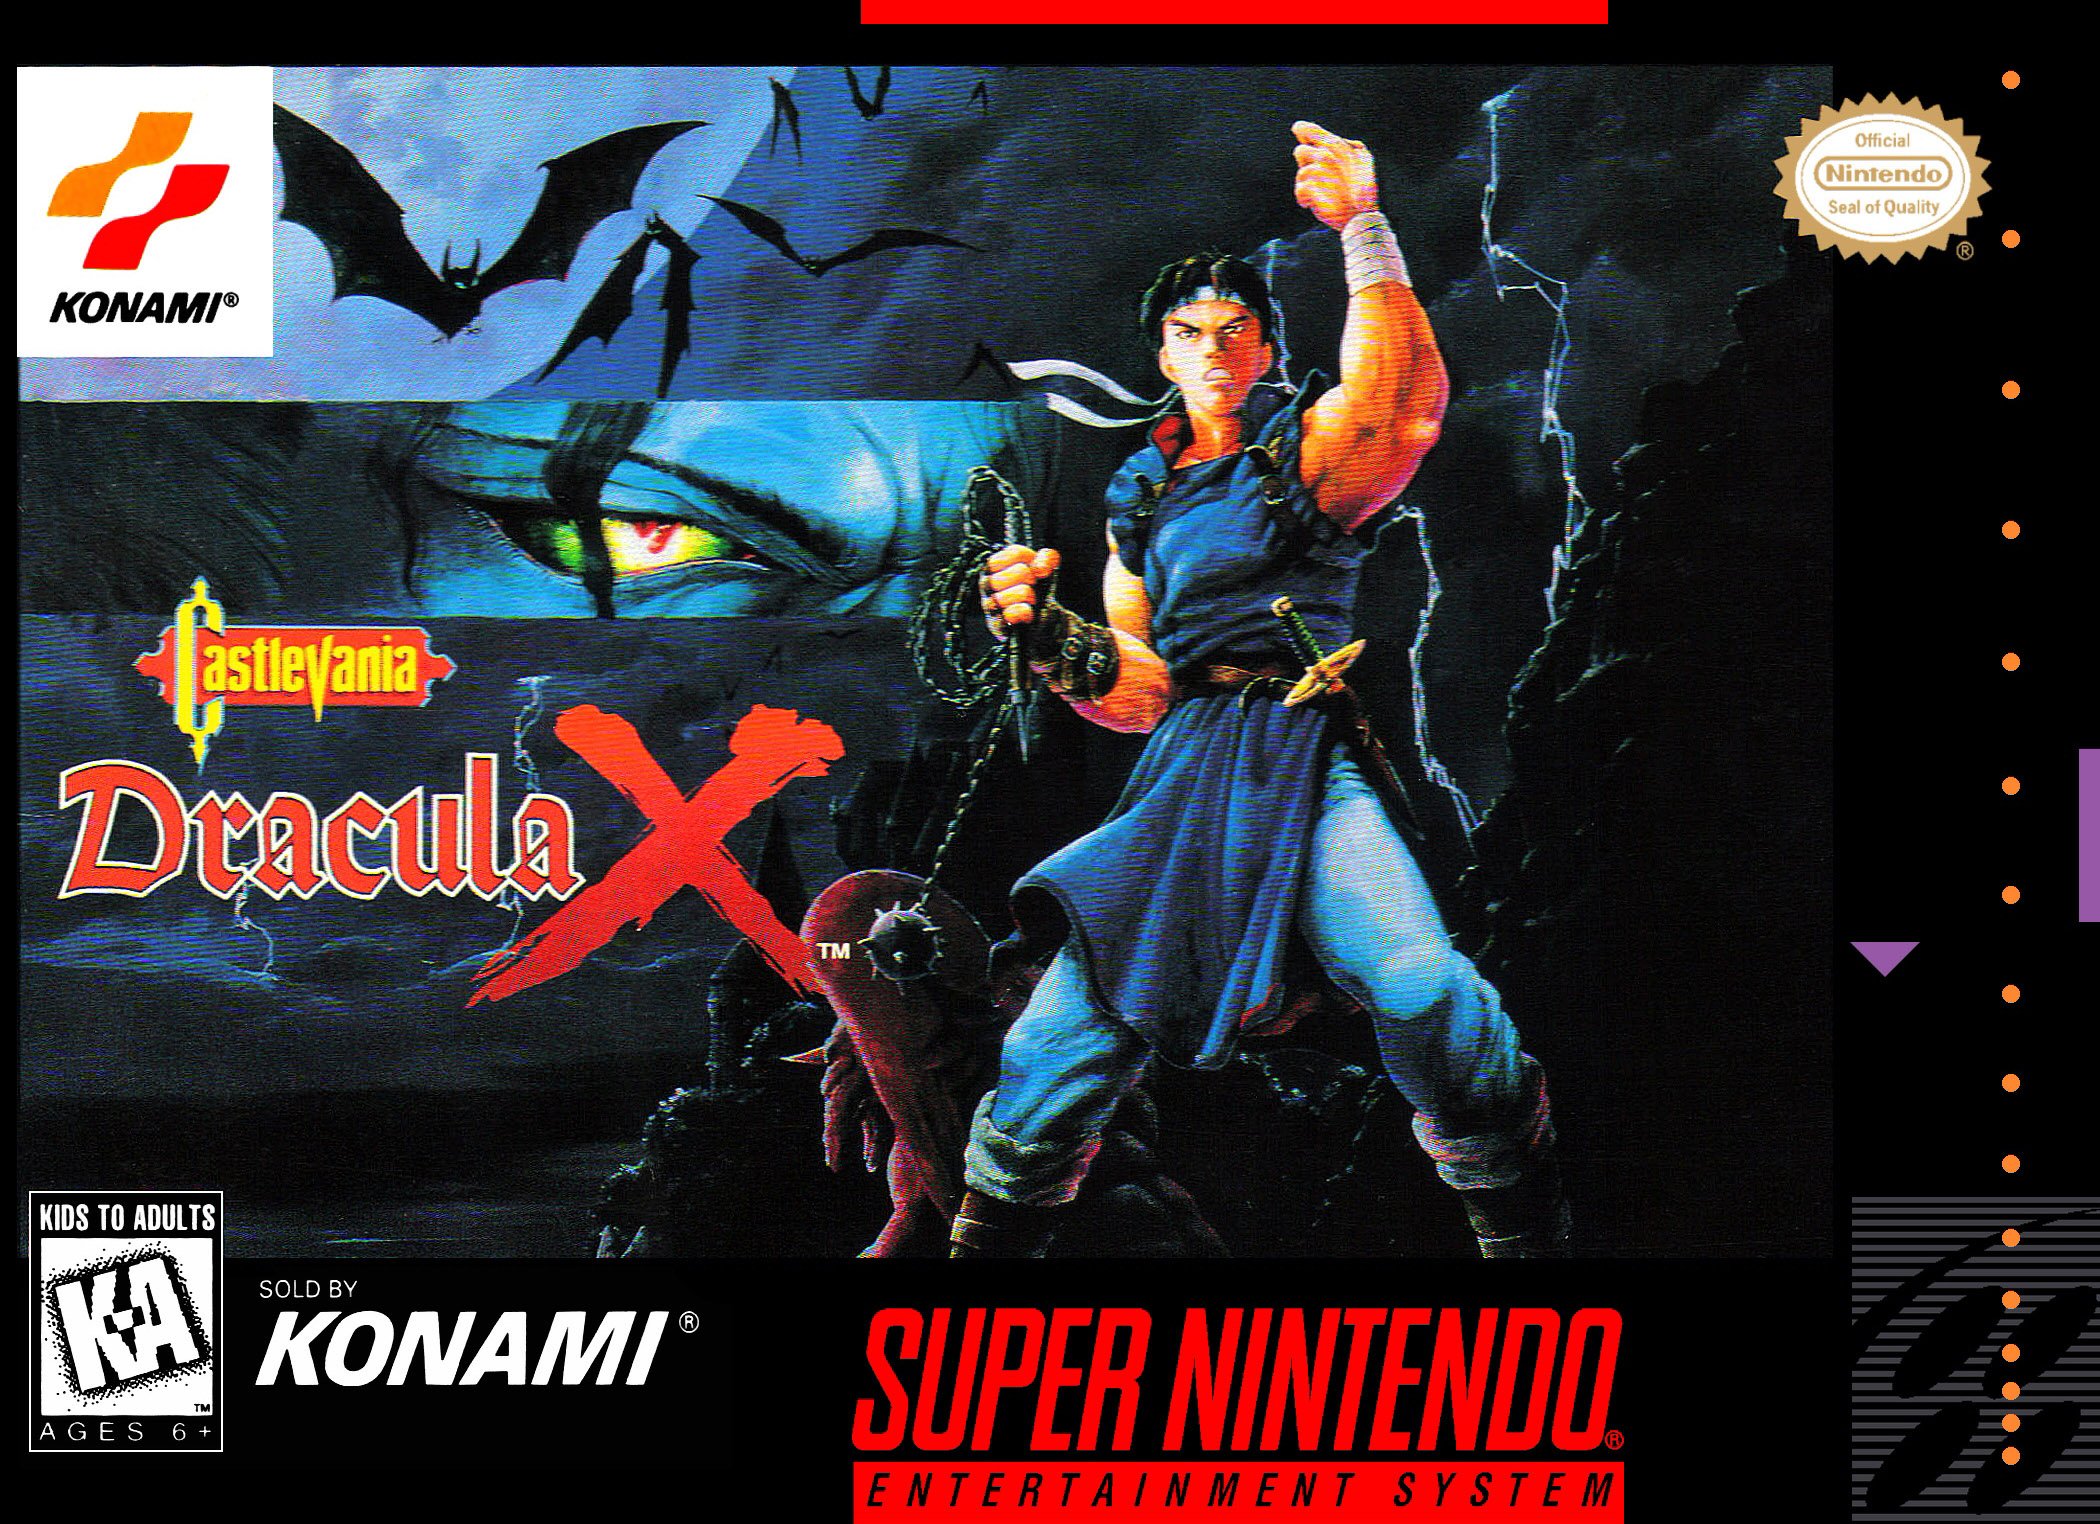 Castlevania: Dracula X, lançado originalmente para SNES, deve fazer parte da nova coletânea